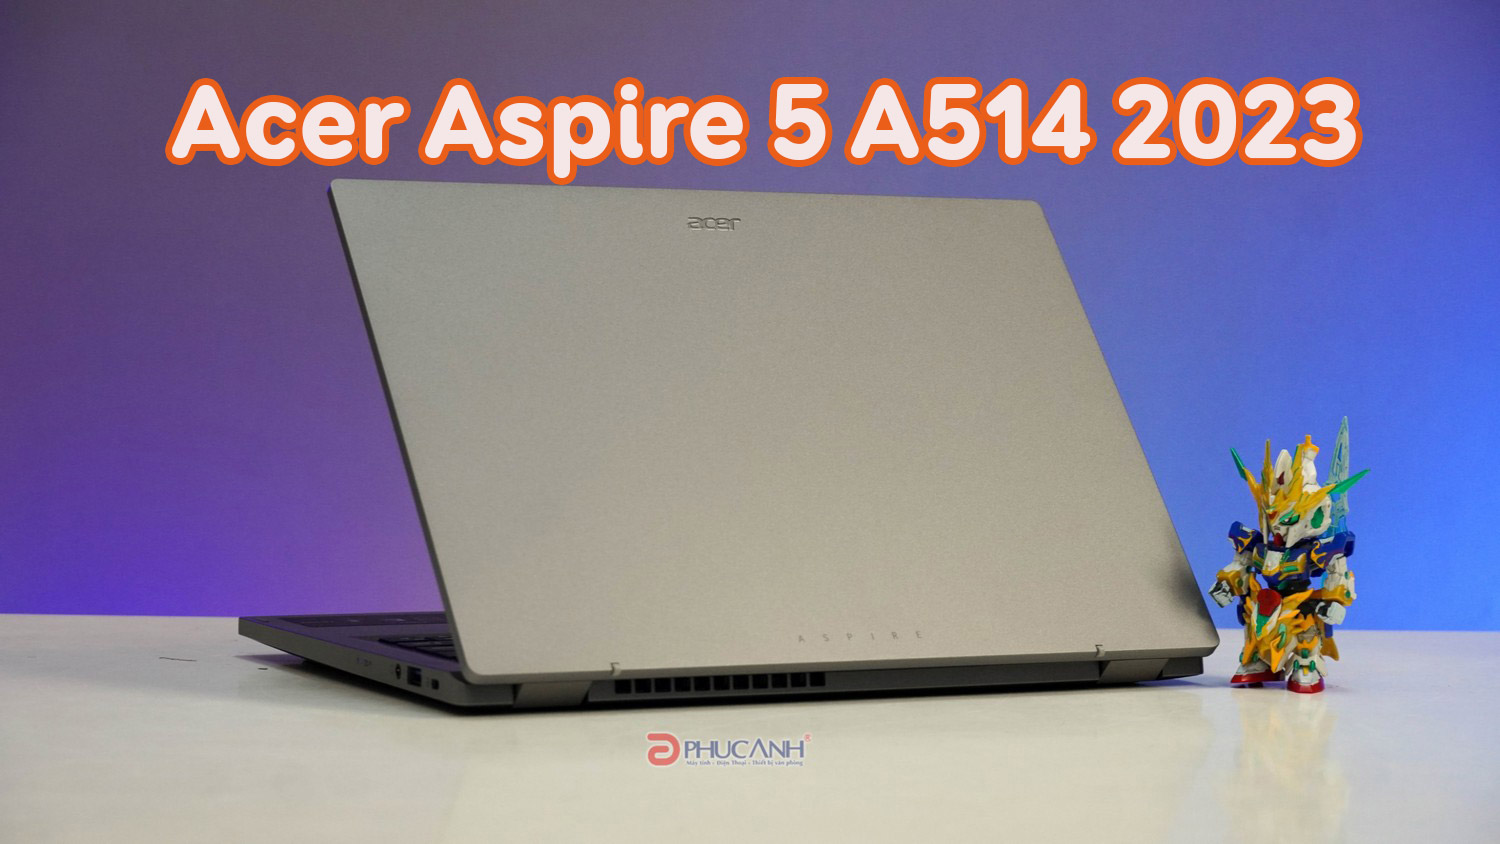 Đánh giá Acer Aspire 5 A514 2023 - Sở hữu sức mạnh Intel thế hệ 13 cùng ngoại hình bắt mắt